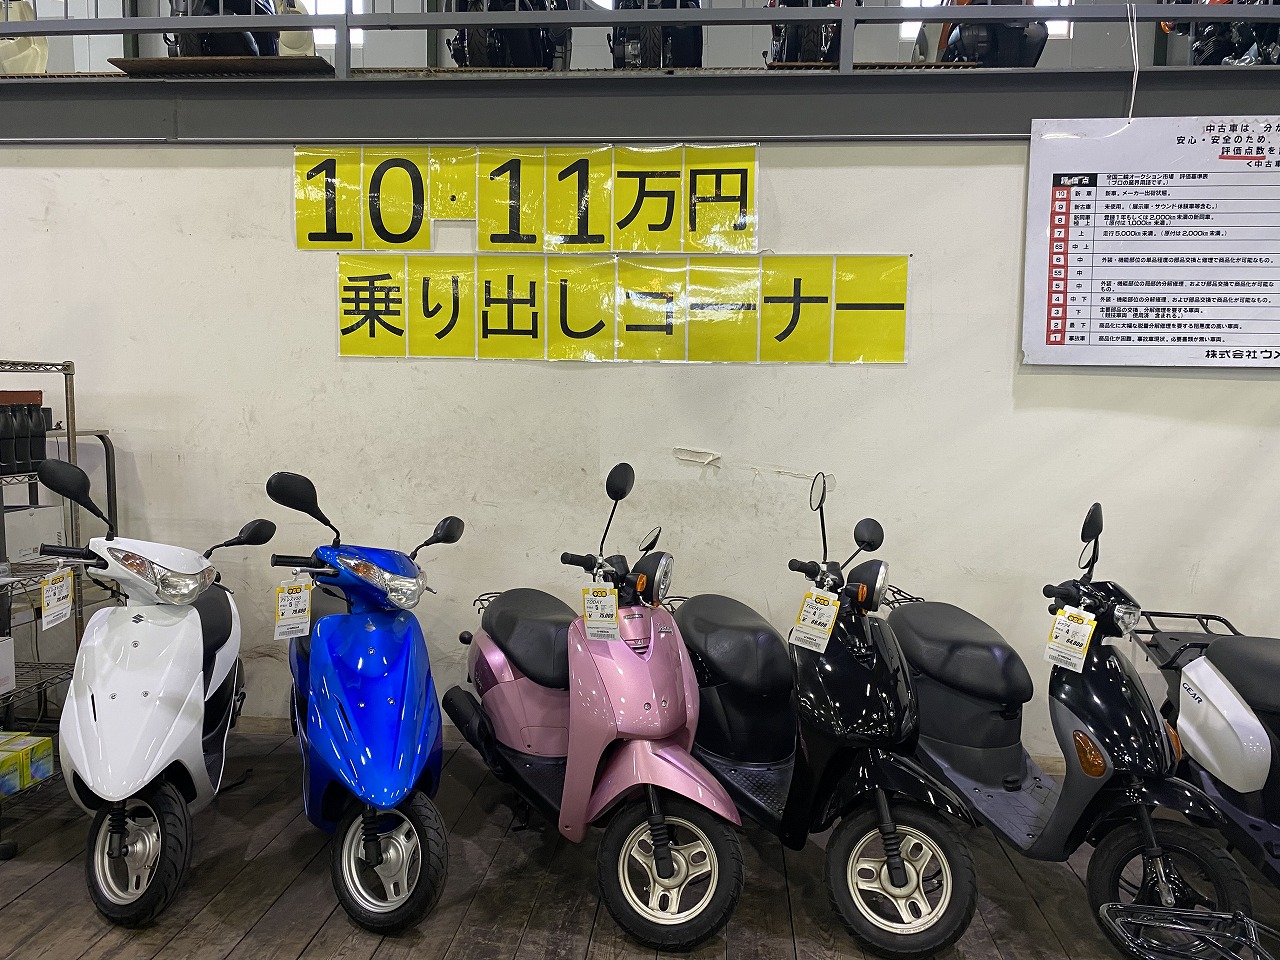 乗り出し10 11万円コーナー作りました 最新情報 U Media ユーメディア 中古 バイク 新車バイク探しの決定版 神奈川 東京でバイク探すならユーメディア